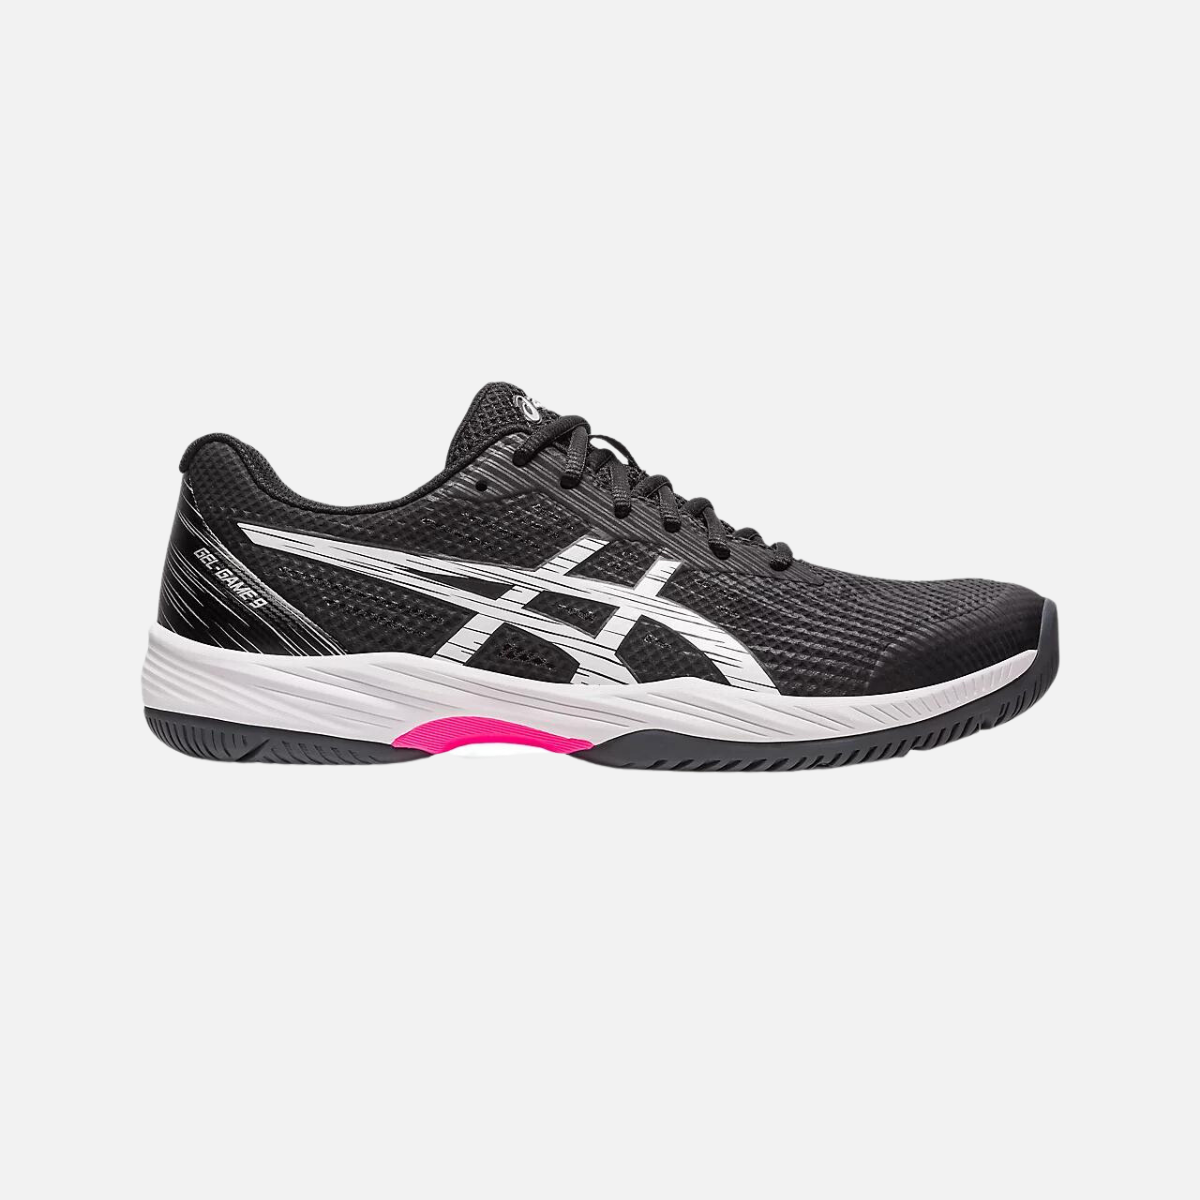 Asics GEL-GAME 9 Men's Tennis Shoes -Black/Hot Pink